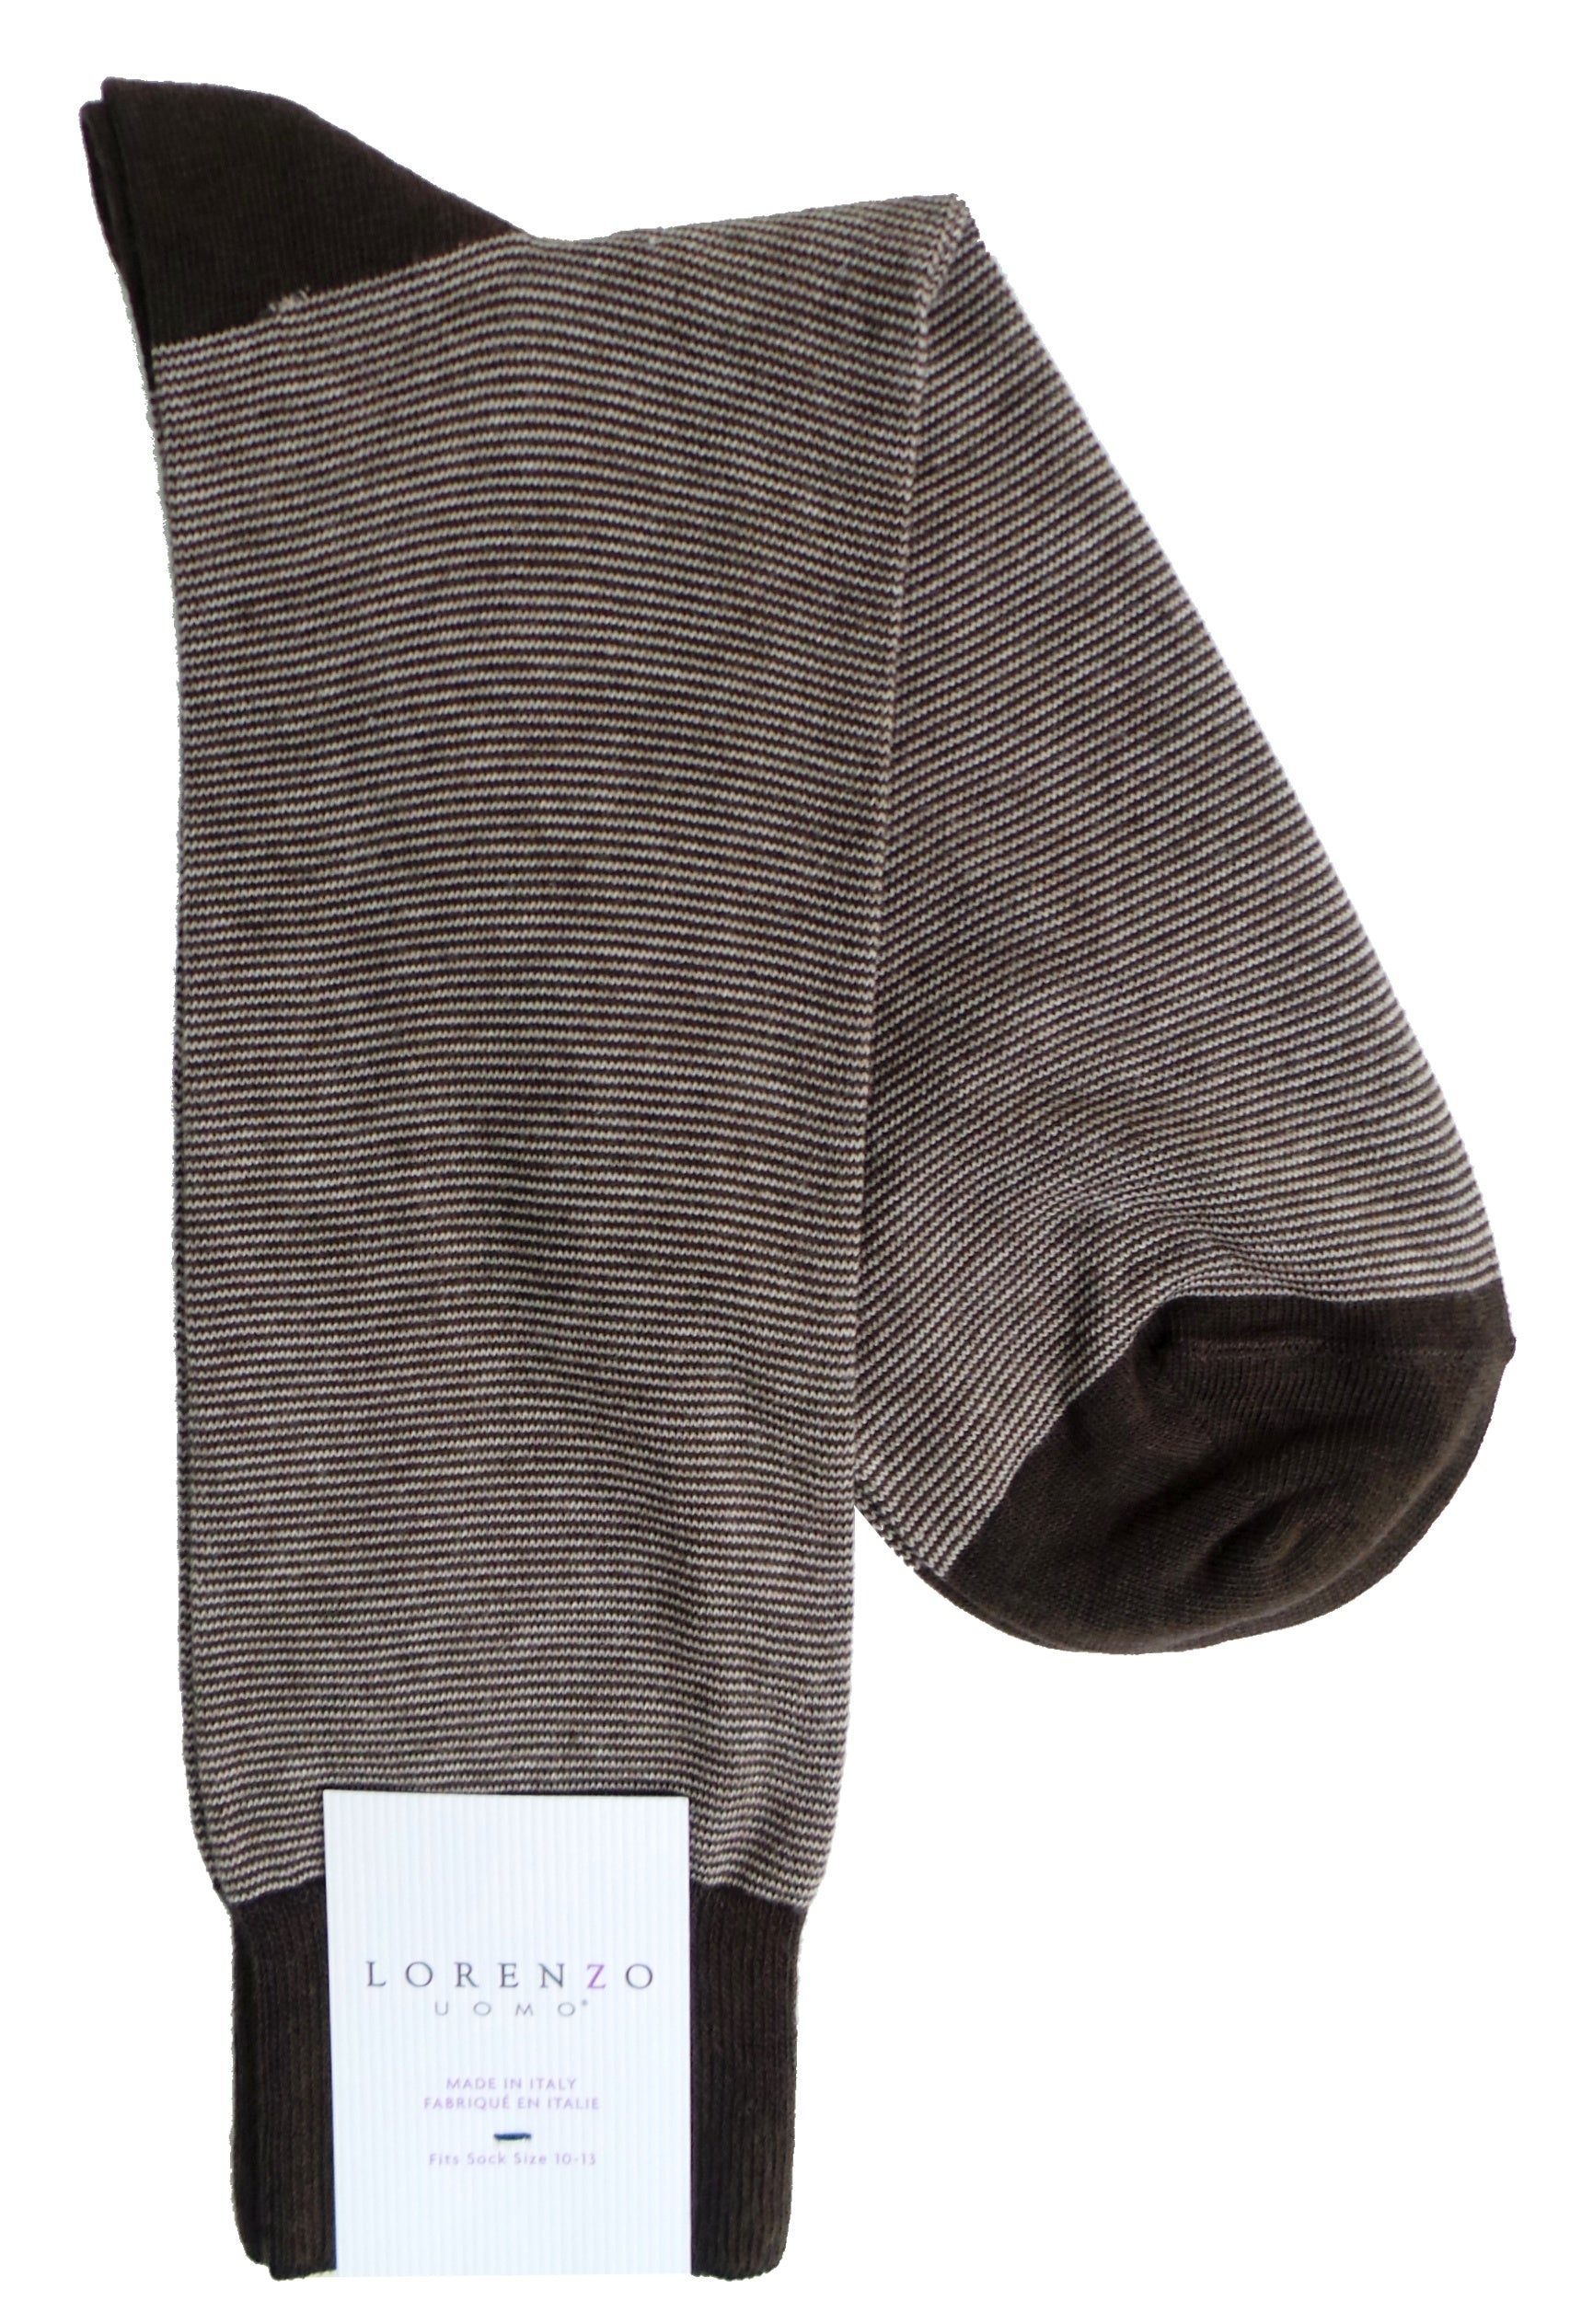 Lorenzo Uomo Mille Righe Stripe Cotton Cashmere Blend Socks